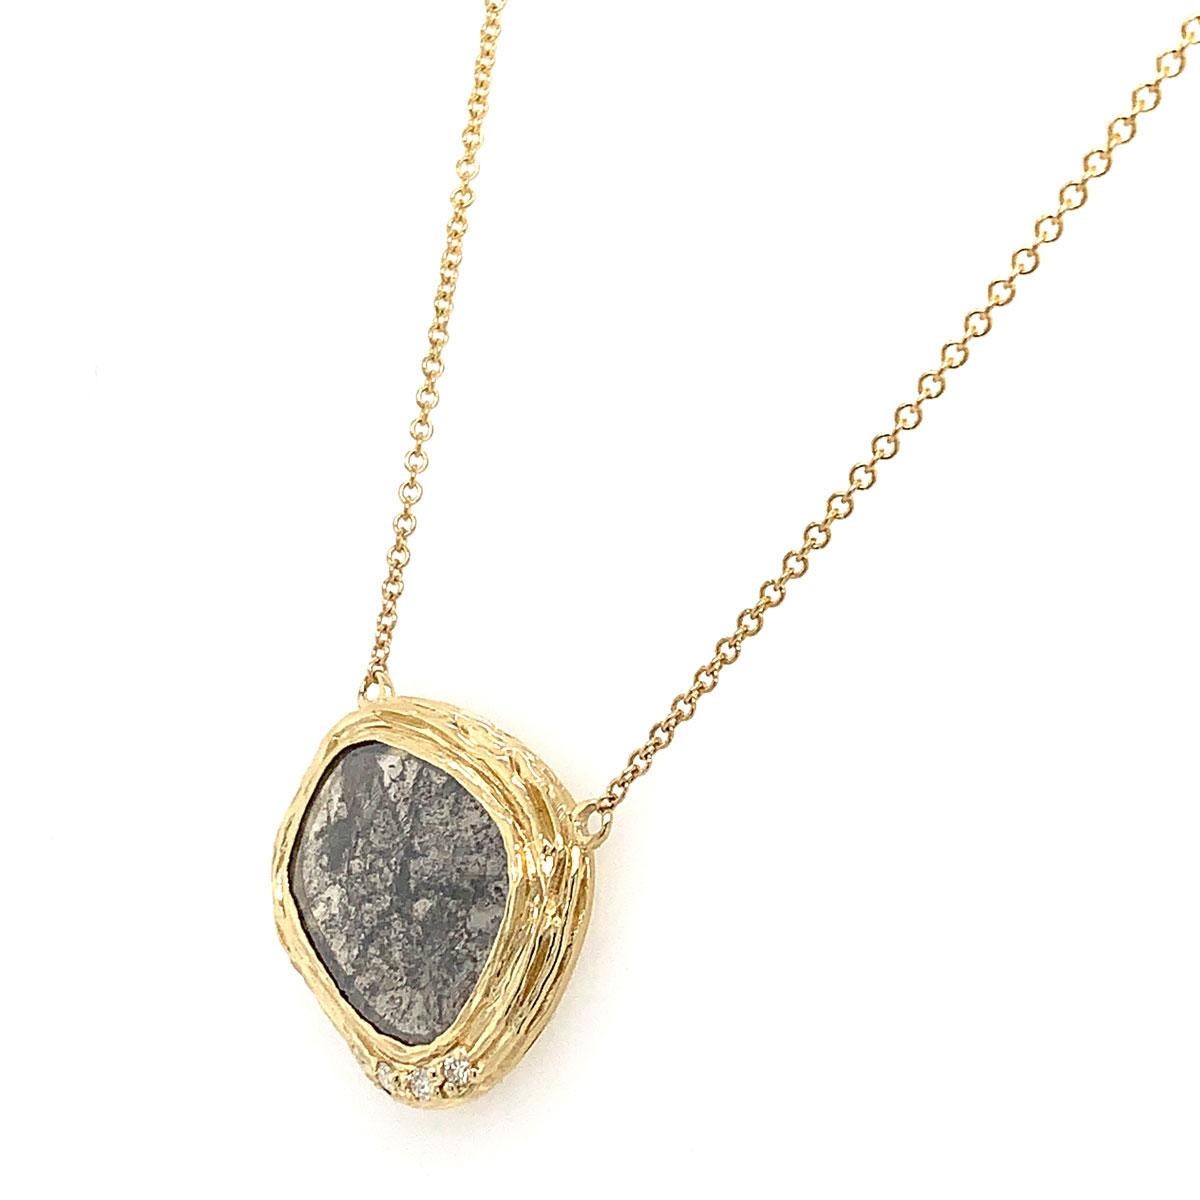 De notre collection exclusive Alpinia, nous sommes fiers de vous présenter ce collier artisanal au design organique unique en son genre. Une combinaison exotique d'un diamant naturel de forme ovale Rosetta Salt & Pepper, et de trois diamants ronds